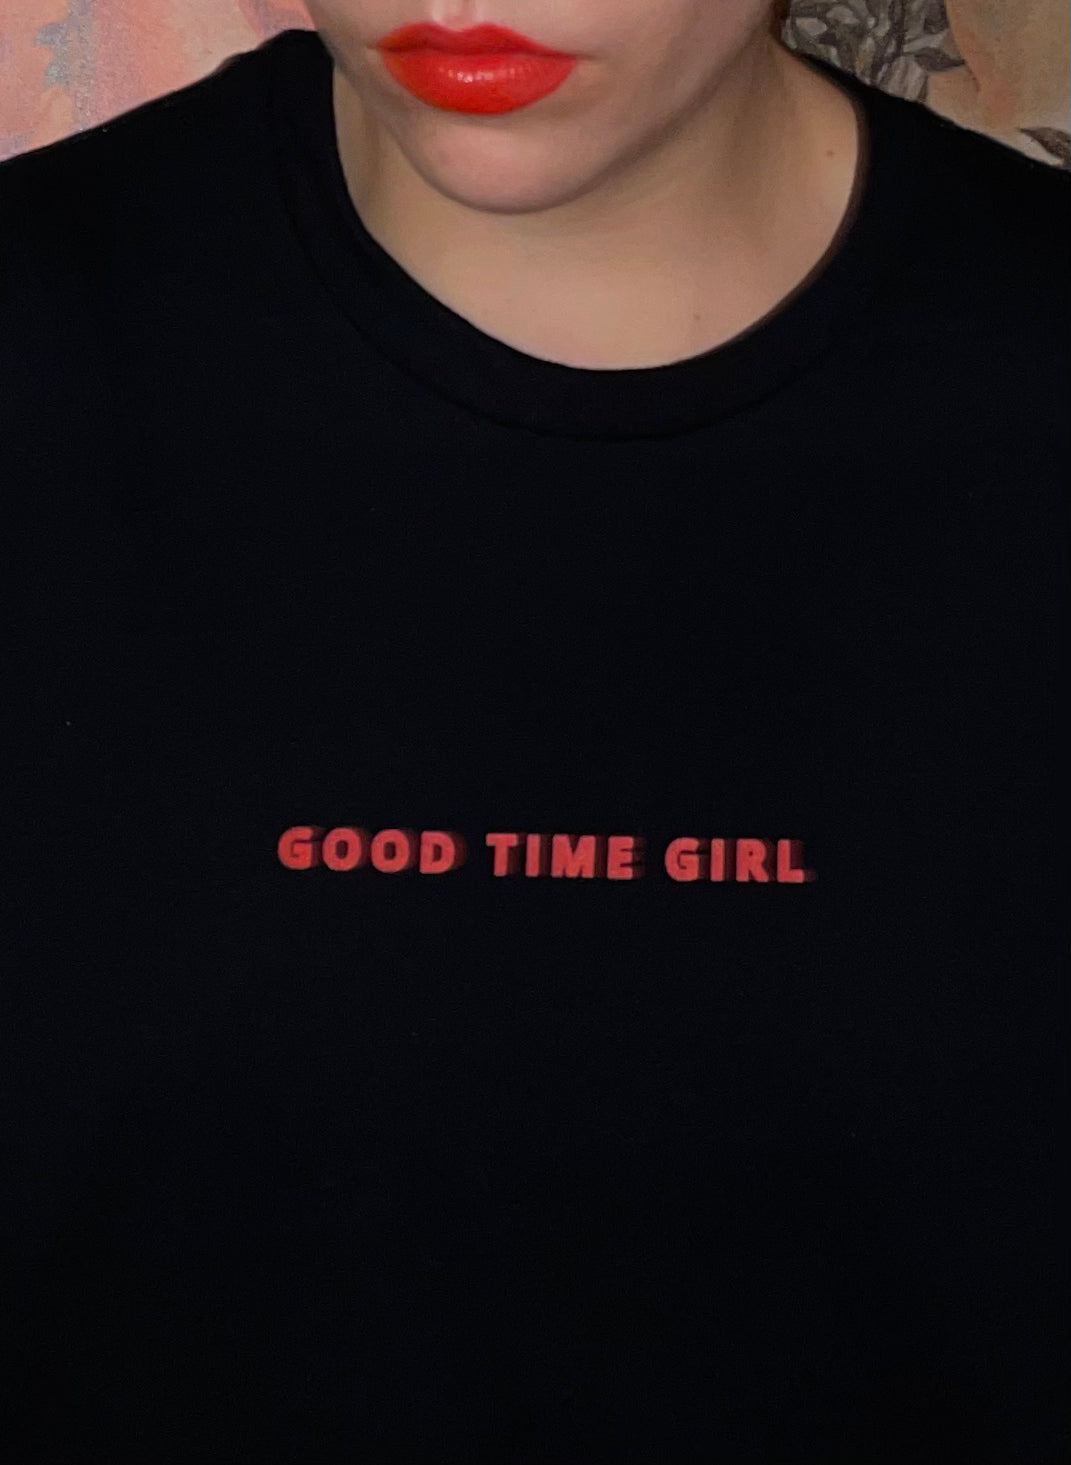 GOOD TIME GIRL - shirt